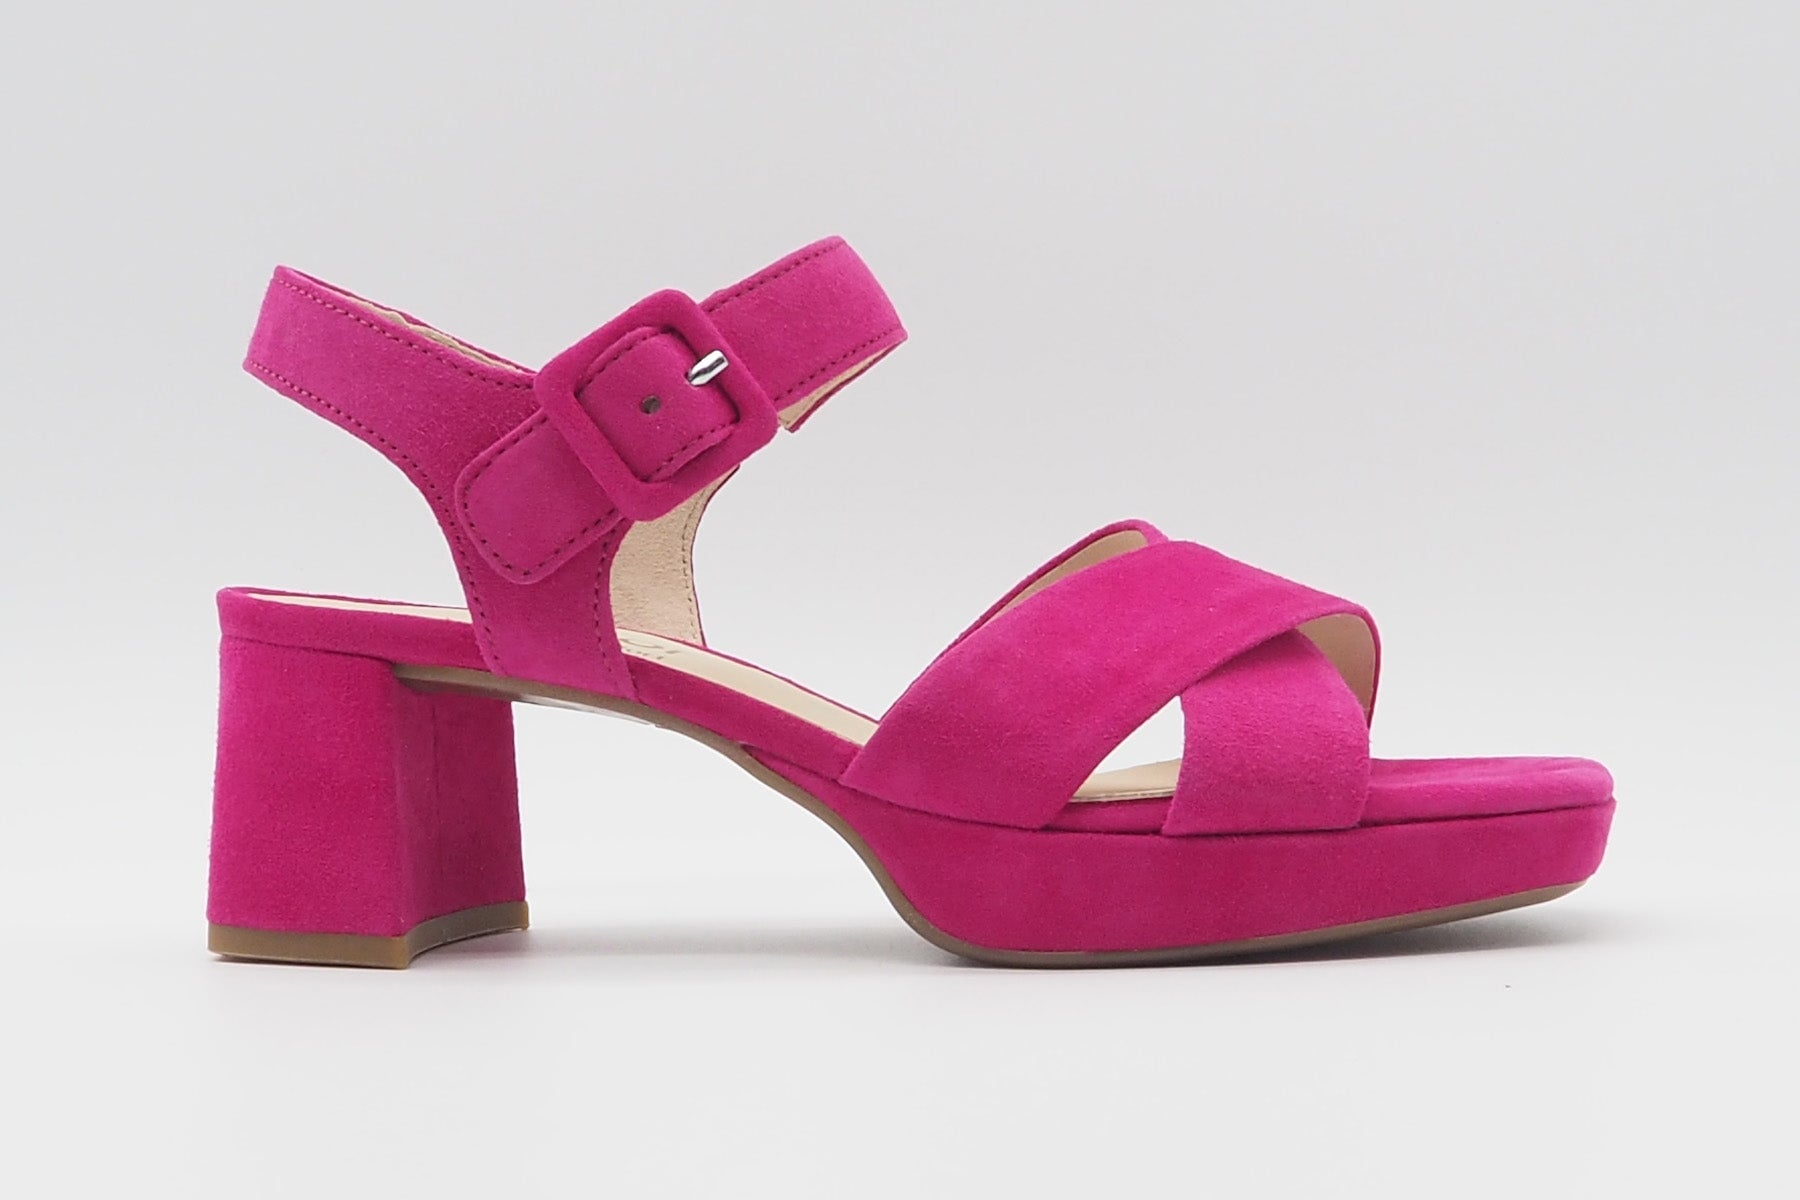 Feine Damen Absatz-Sandale aus Veloursleder in Pink - Absatz 6cm Damen Sandalen Gabor 